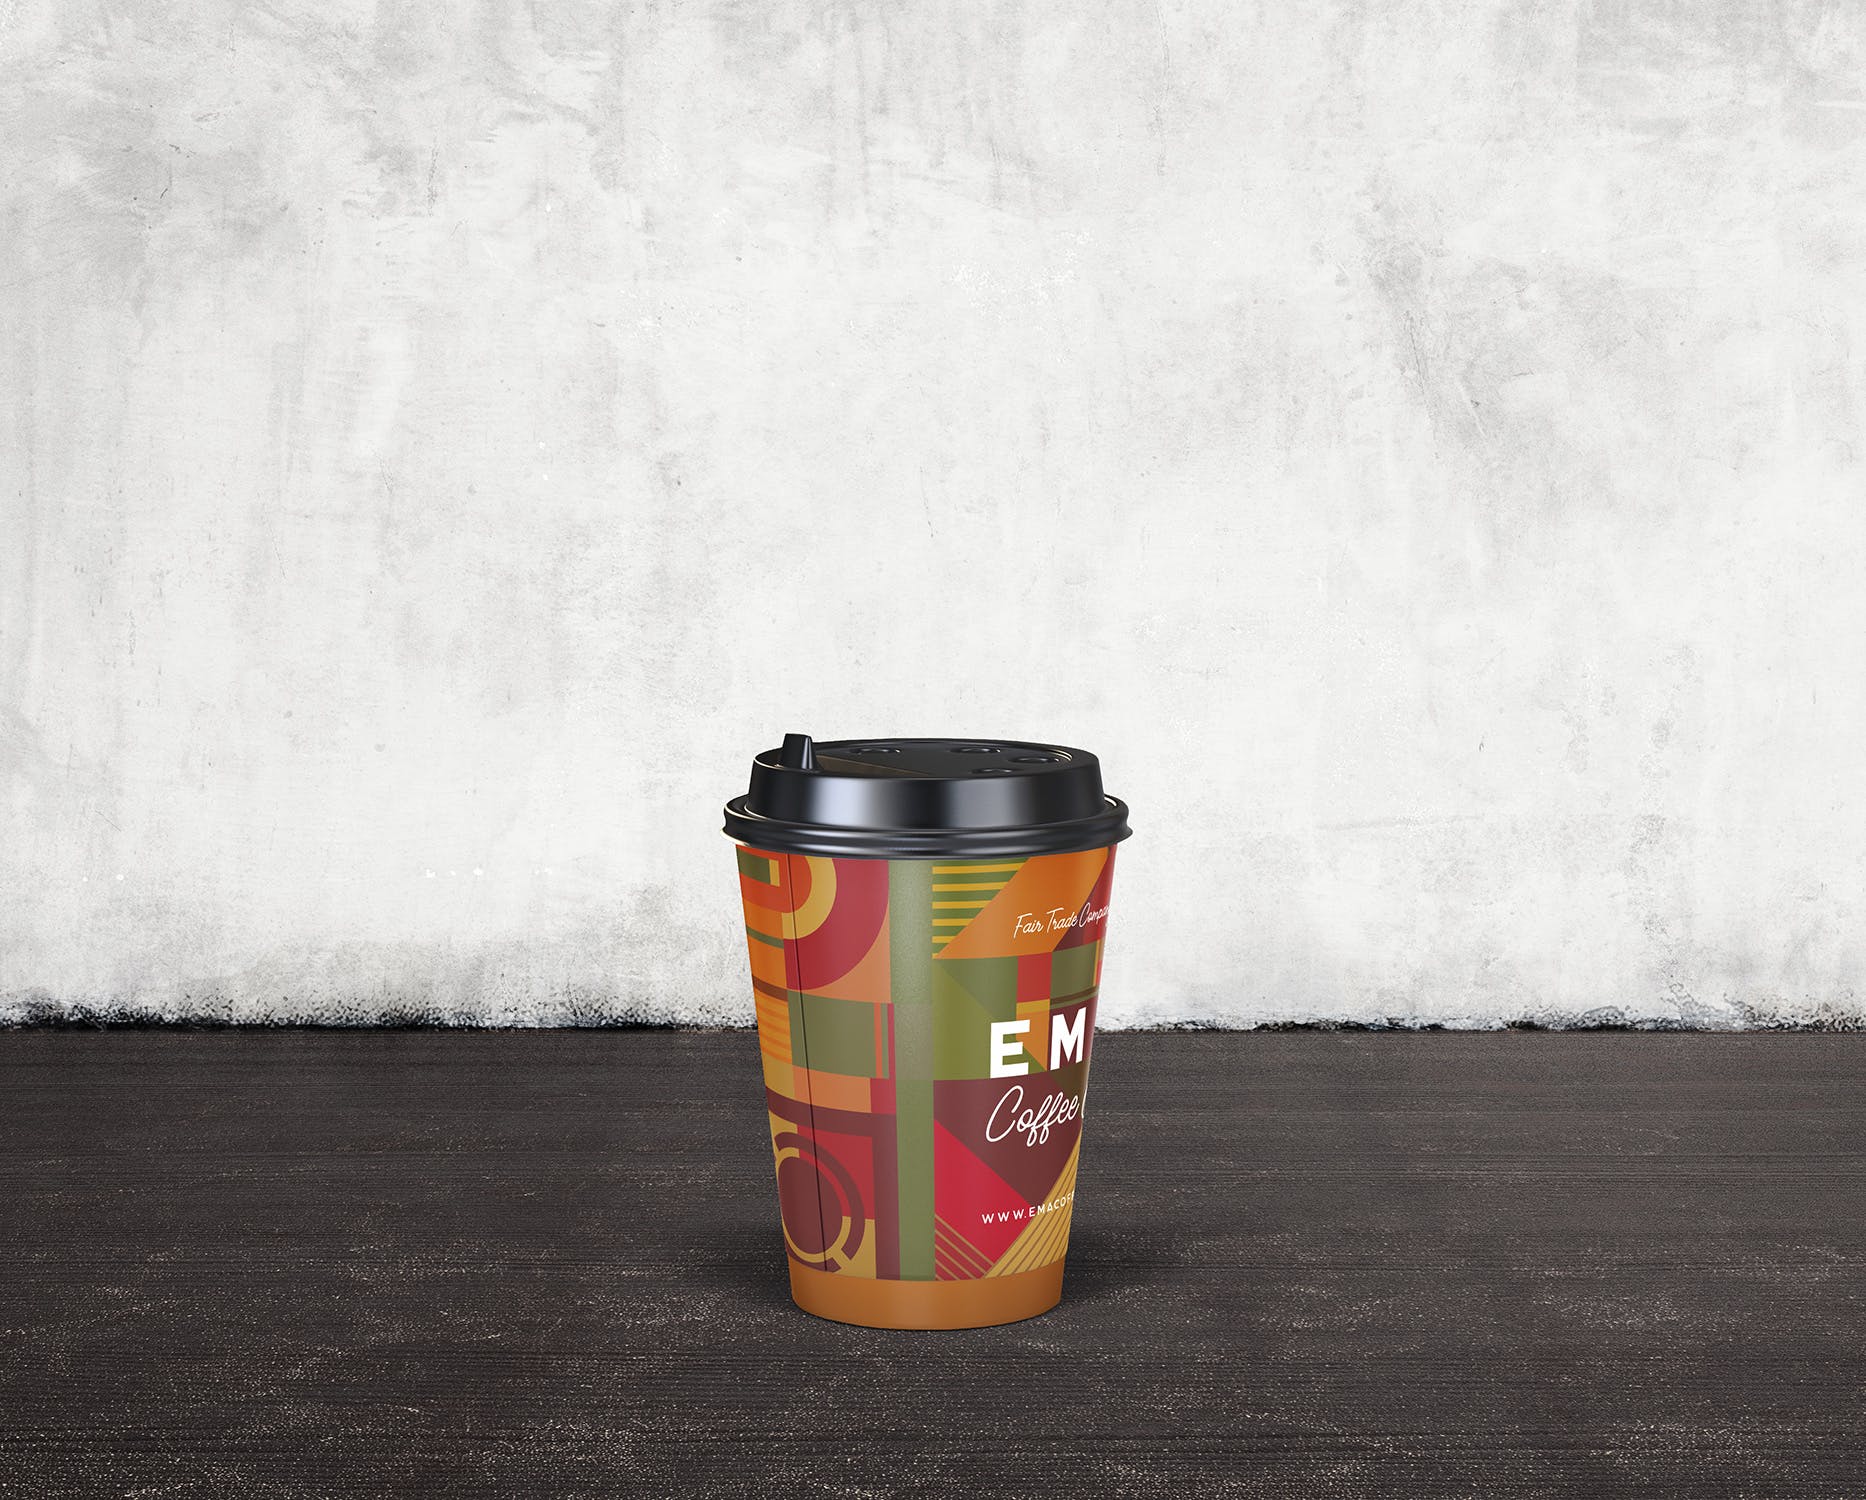 8个咖啡纸杯外观设计效果图第一素材精选 8 Coffee Paper Cup Mockups插图(3)